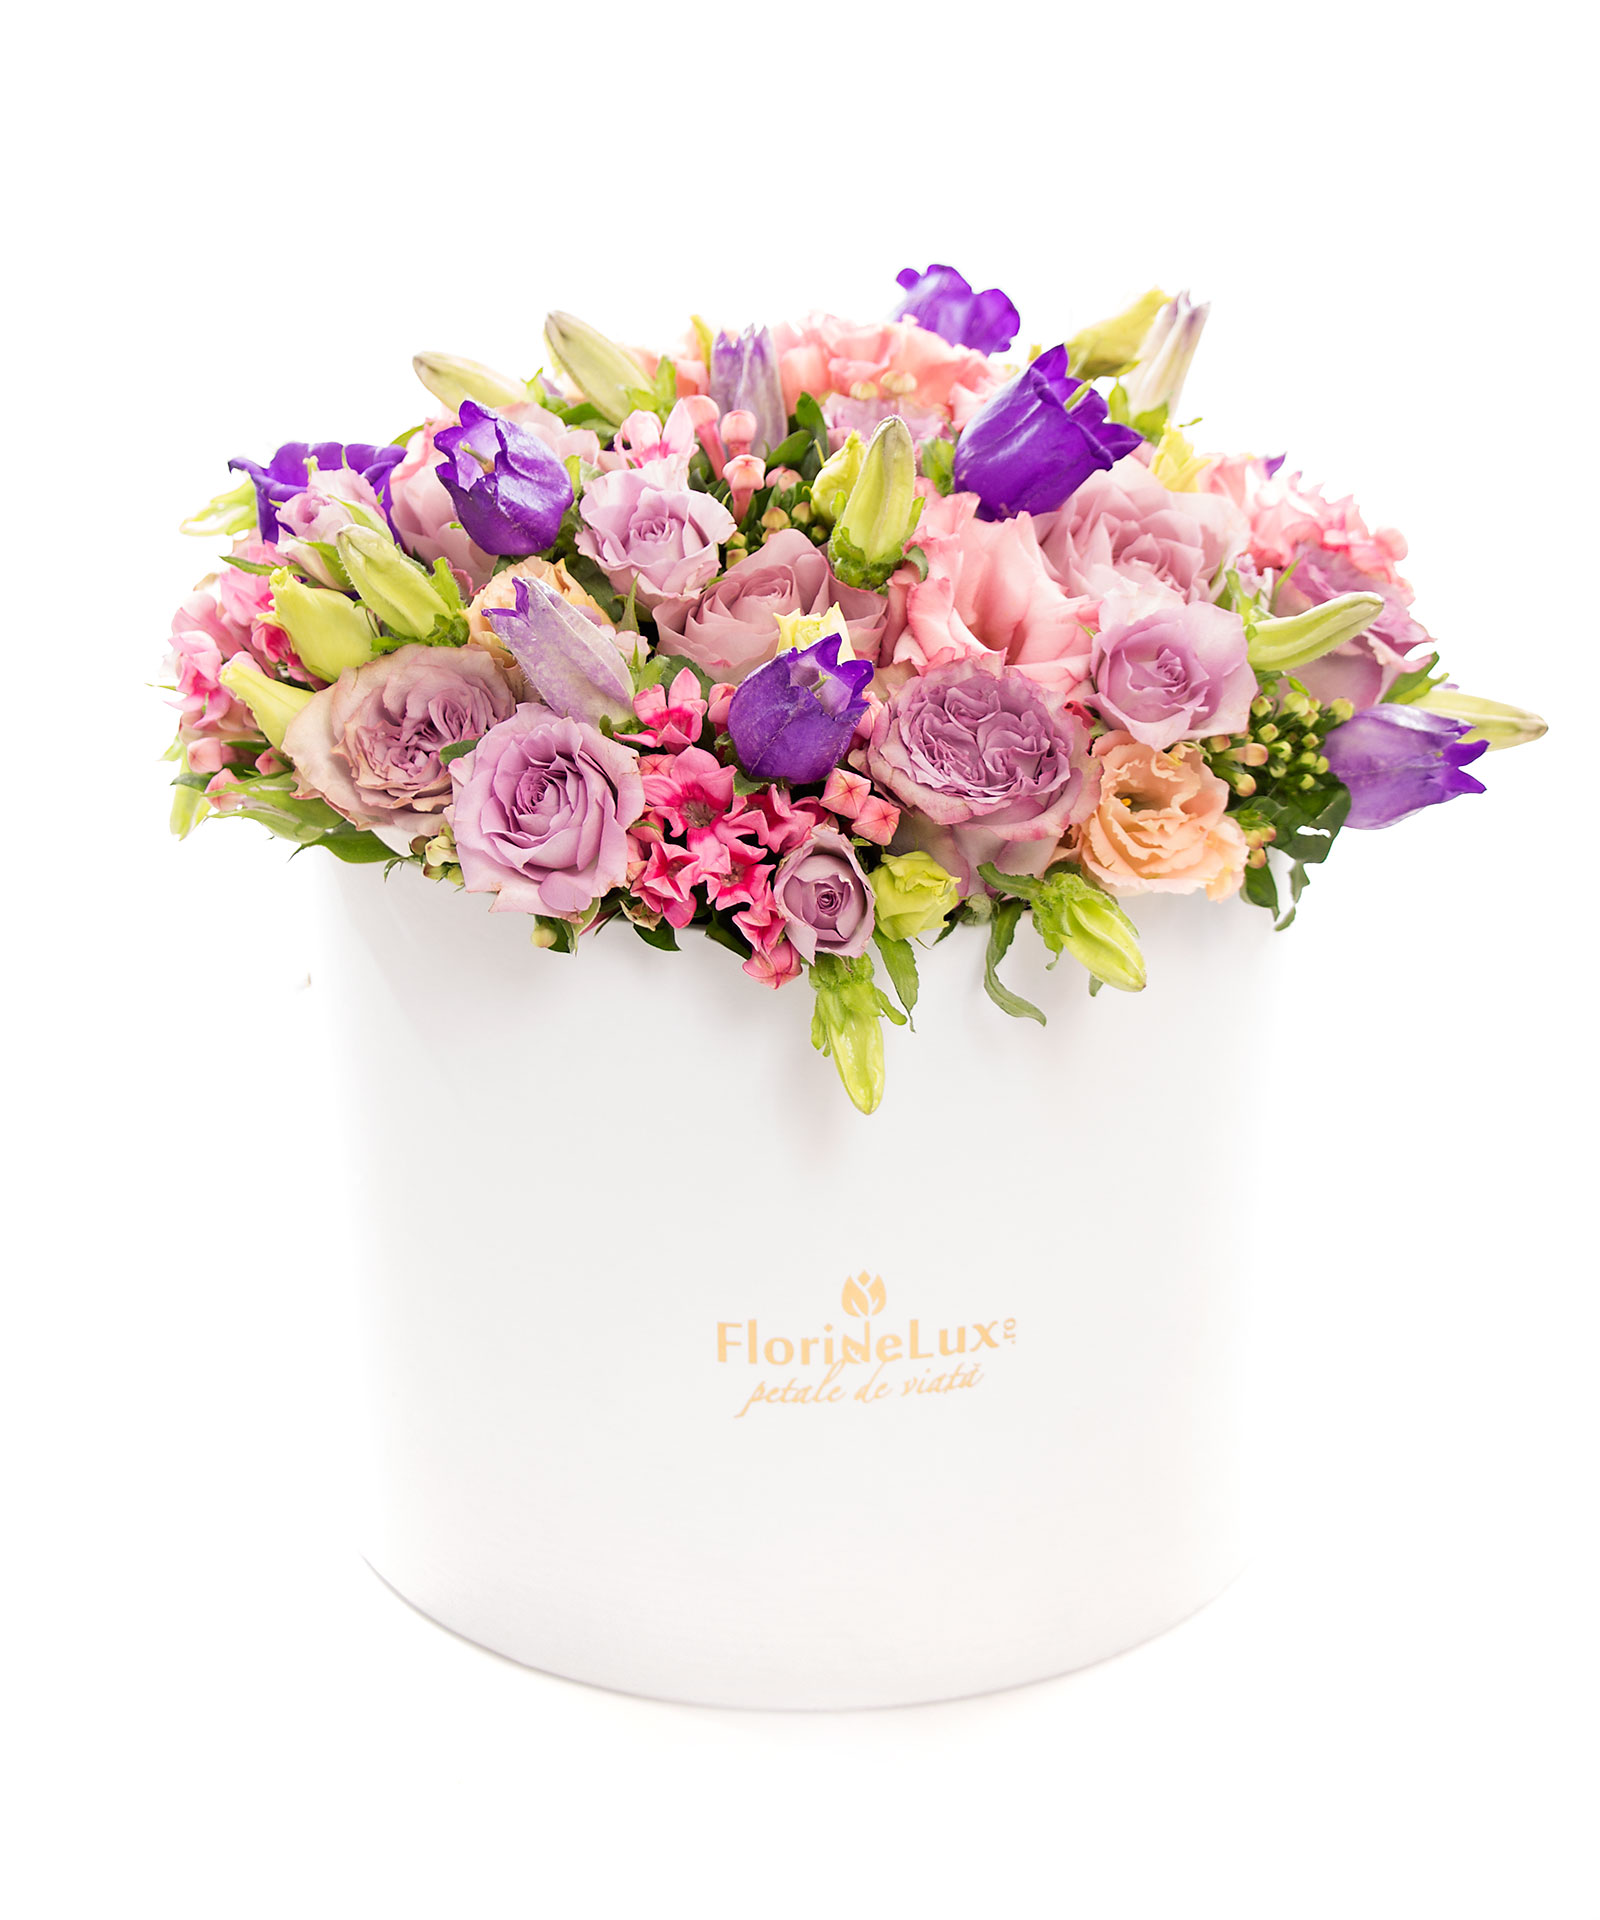 Cutie magnifica cu flori multicolore si Corton Charlemagne